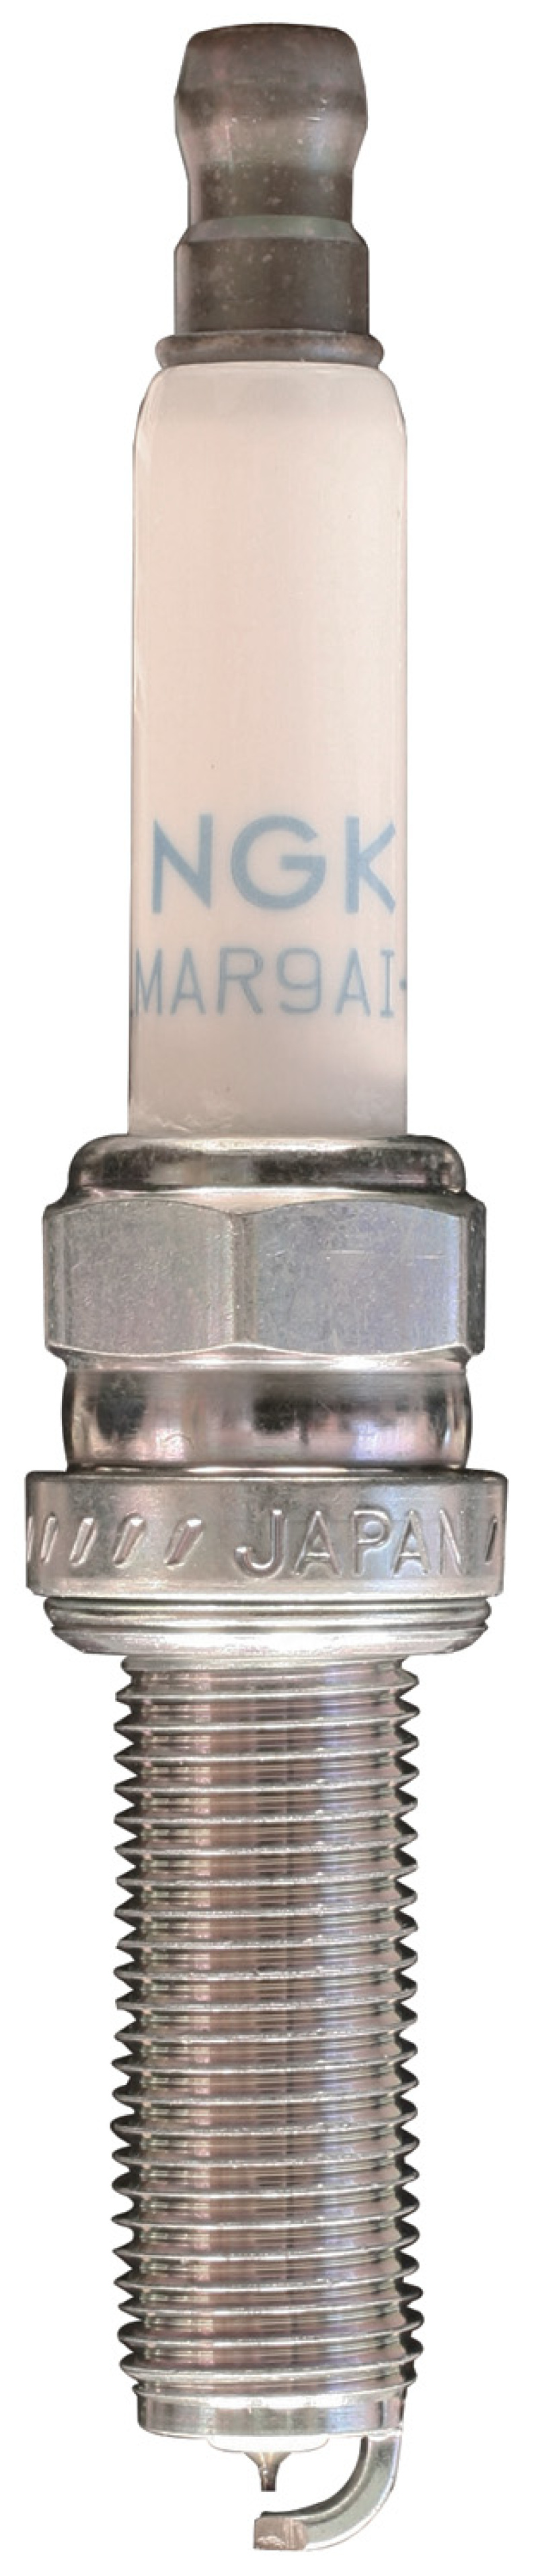 NGK Laser Iridium Spark Plug Box of 4 (LMAR8AI-8) - 92288